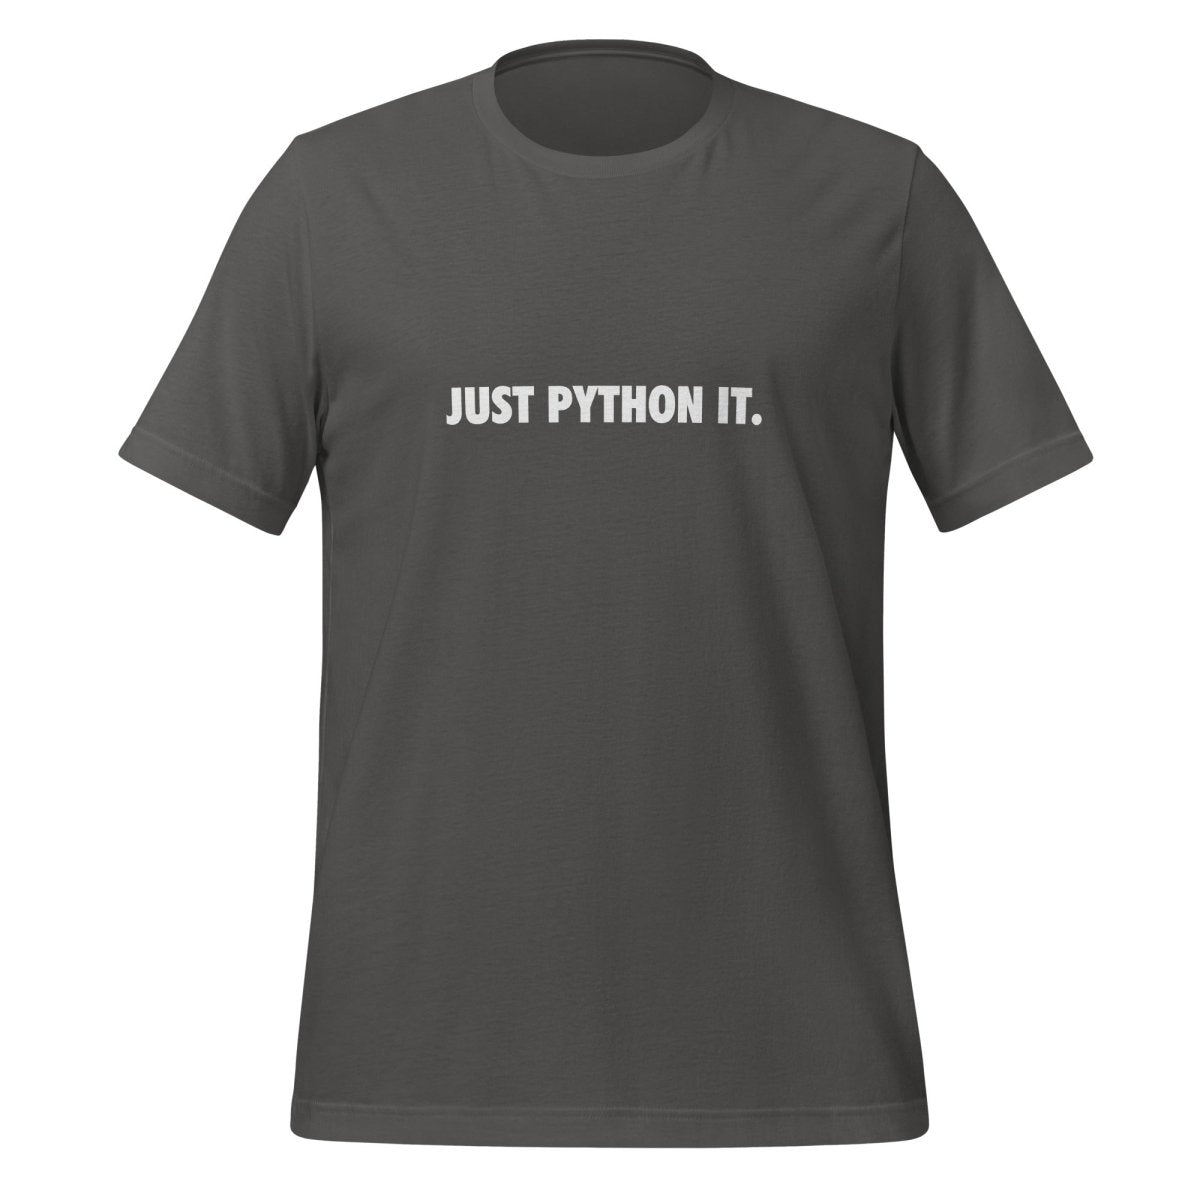 JUST PYTHON IT. T - Shirt (unisex) - Asphalt - AI Store